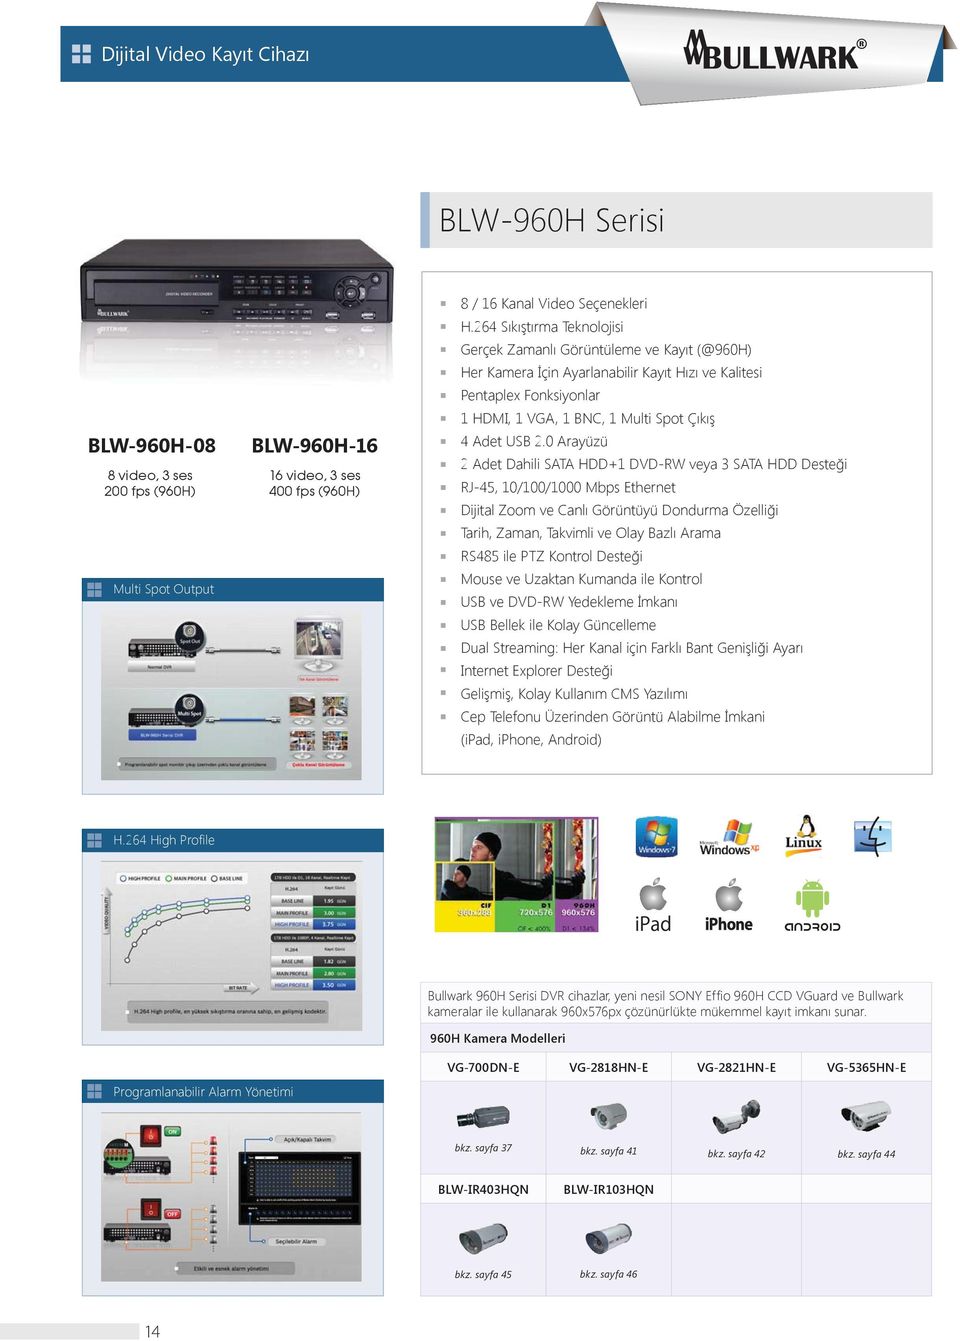 0 Arayüzü 2 Adet Dahili SATA HDD+1 DVD-RW veya 3 SATA HDD Deste i RJ-45, 10/100/1000 Mbps Ethernet Dijital Zoom ve Canl Görüntüyü Dondurma Özelli i Tarih, Zaman, Takvimli ve Olay Bazl Arama RS485 ile